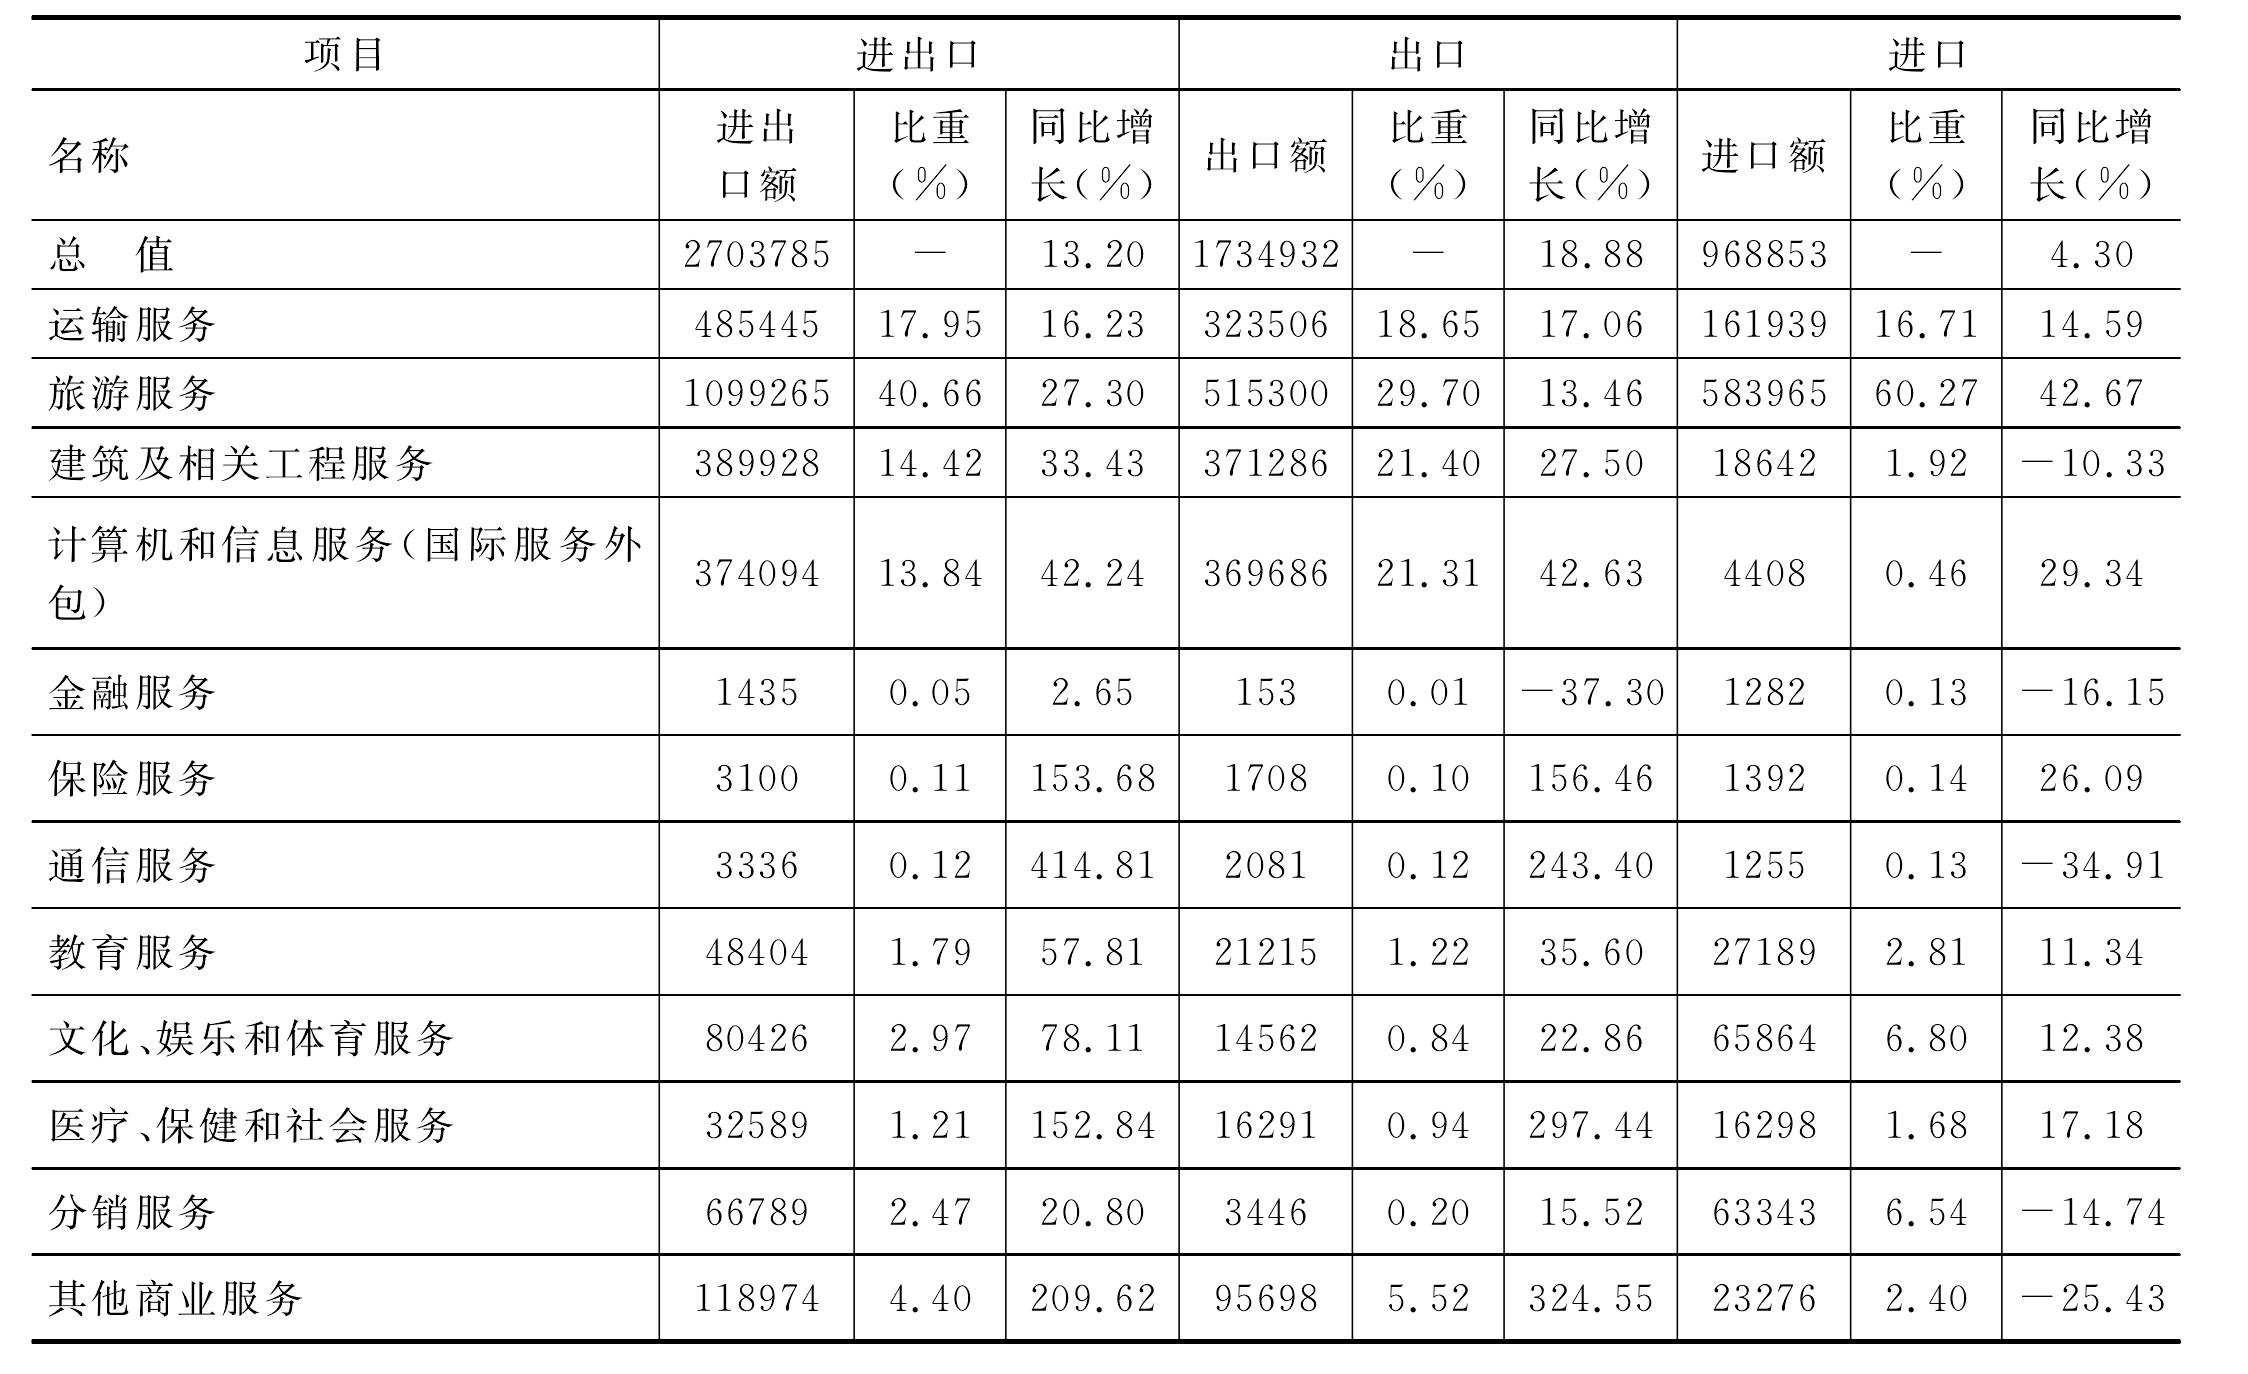 2012年度浙江省国际服务贸易统计表